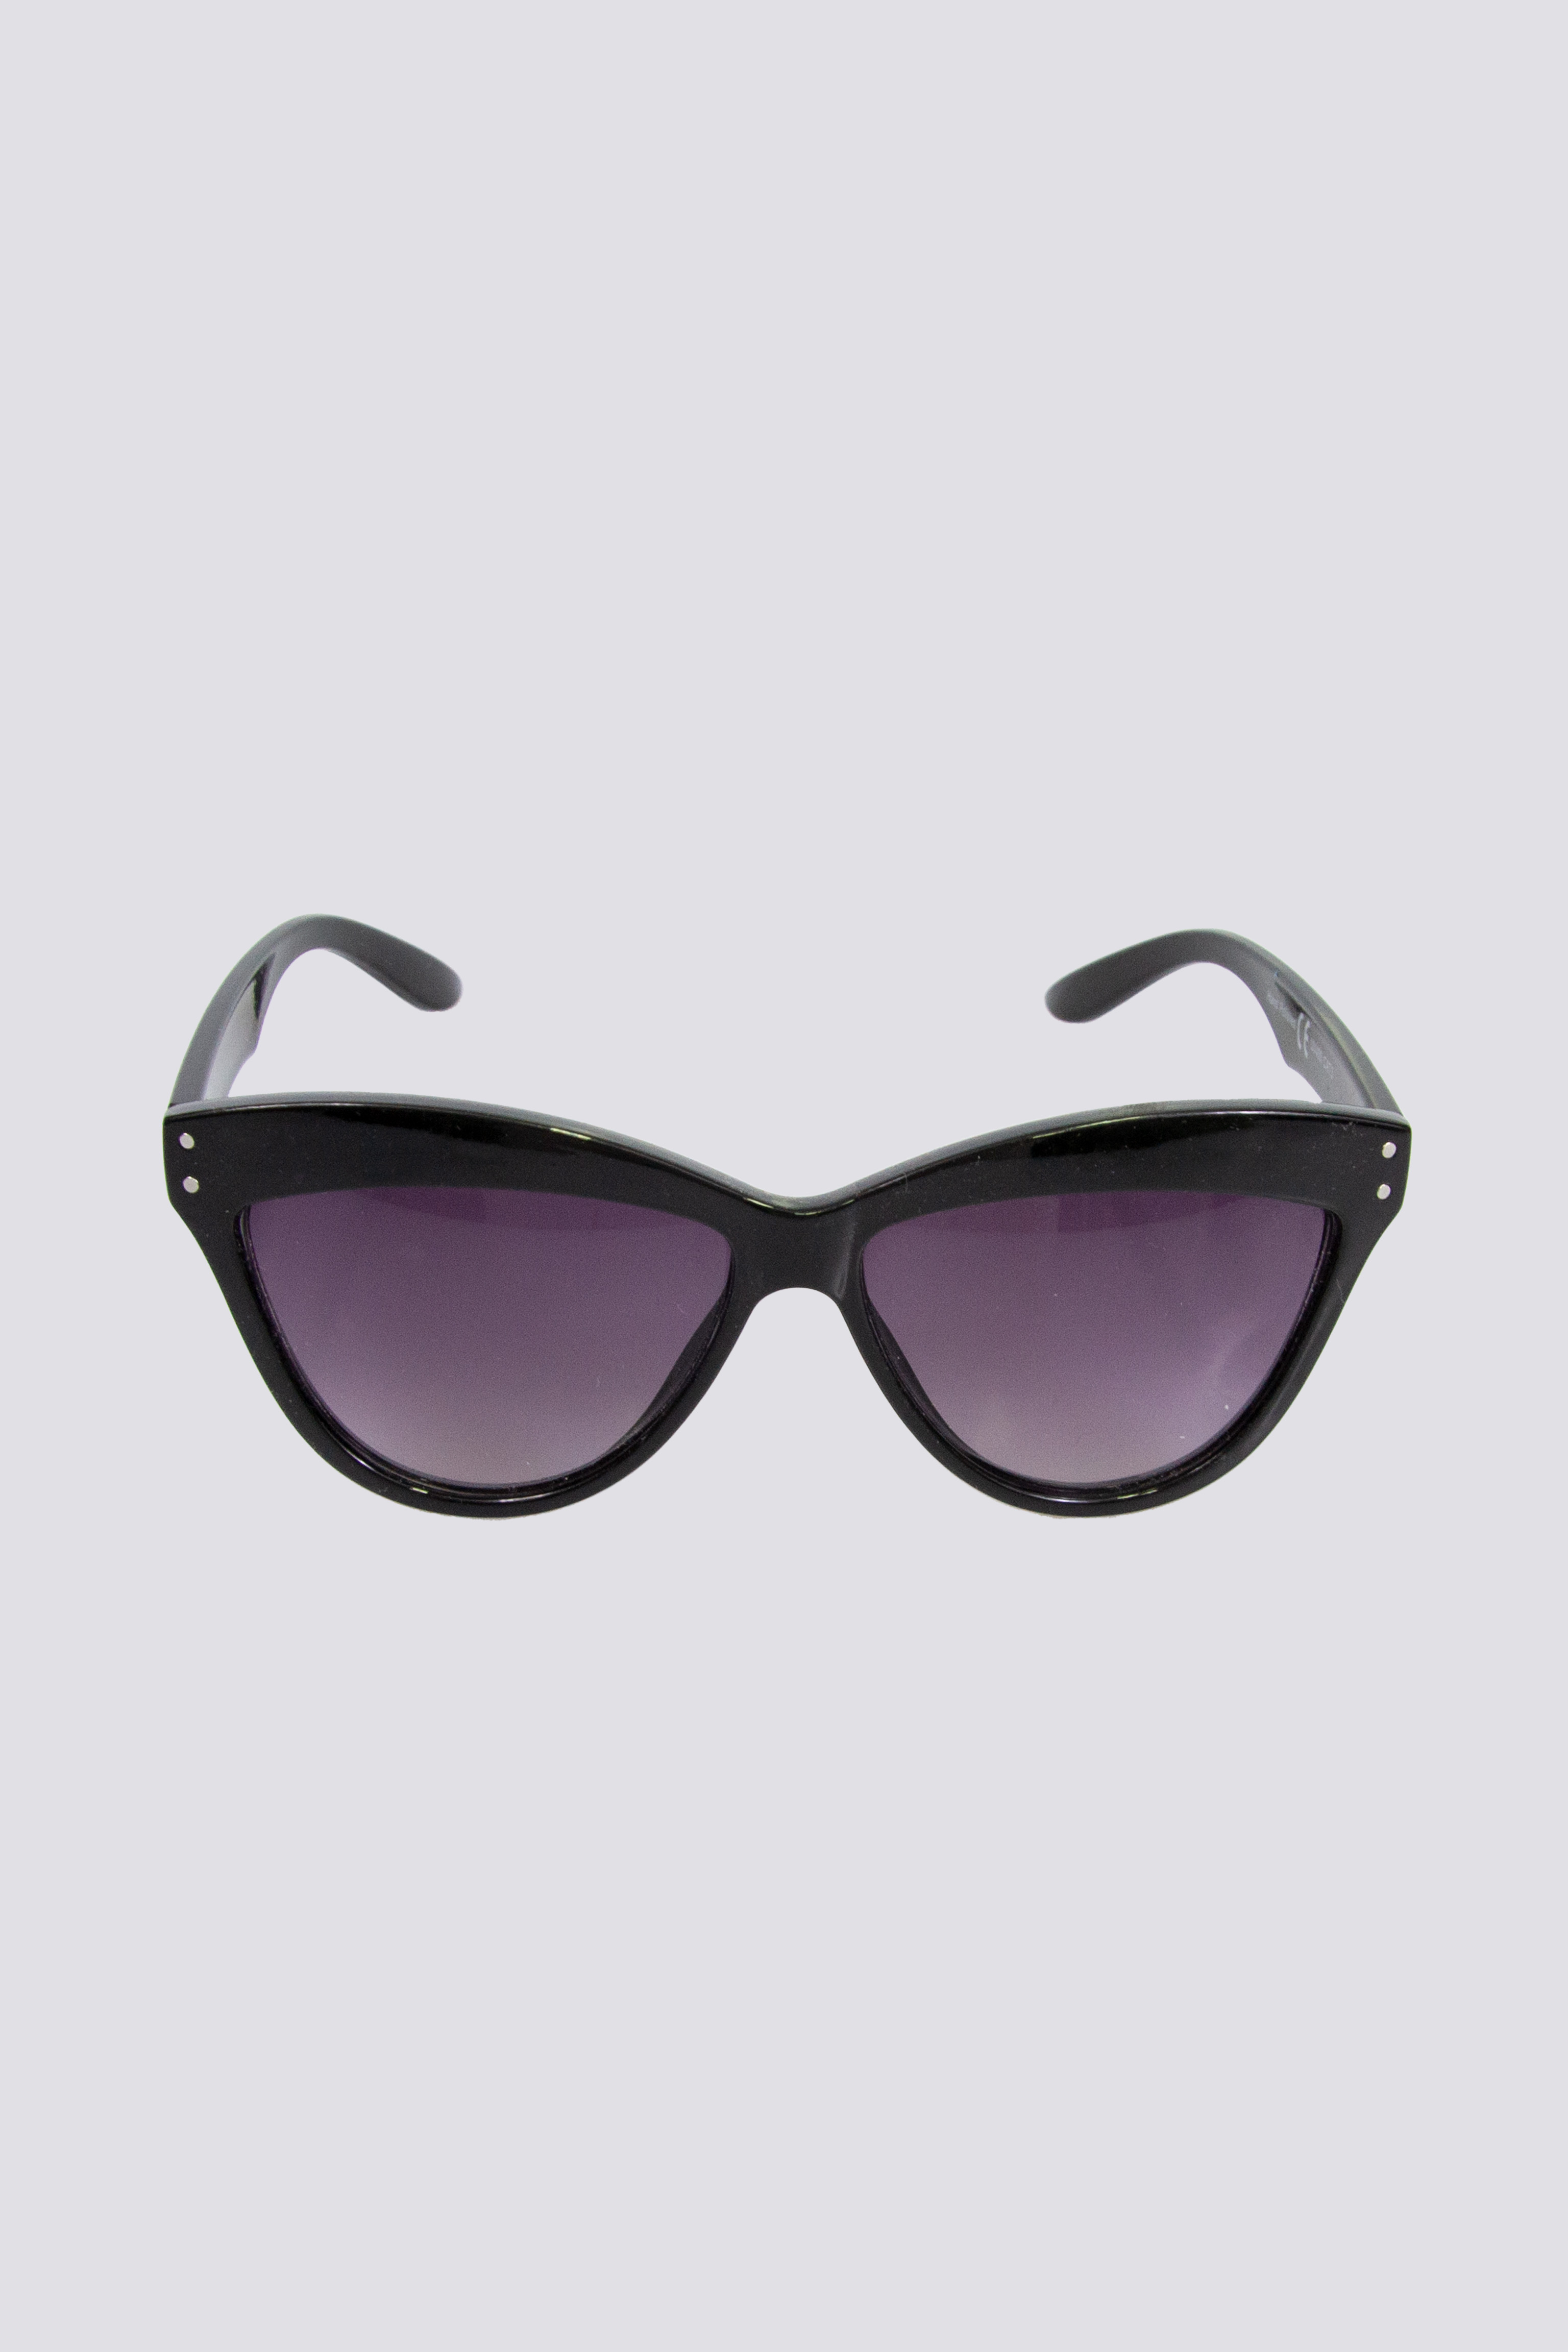 Okulary  przeciwsłoneczne czarne - Allora zdjęcie 2